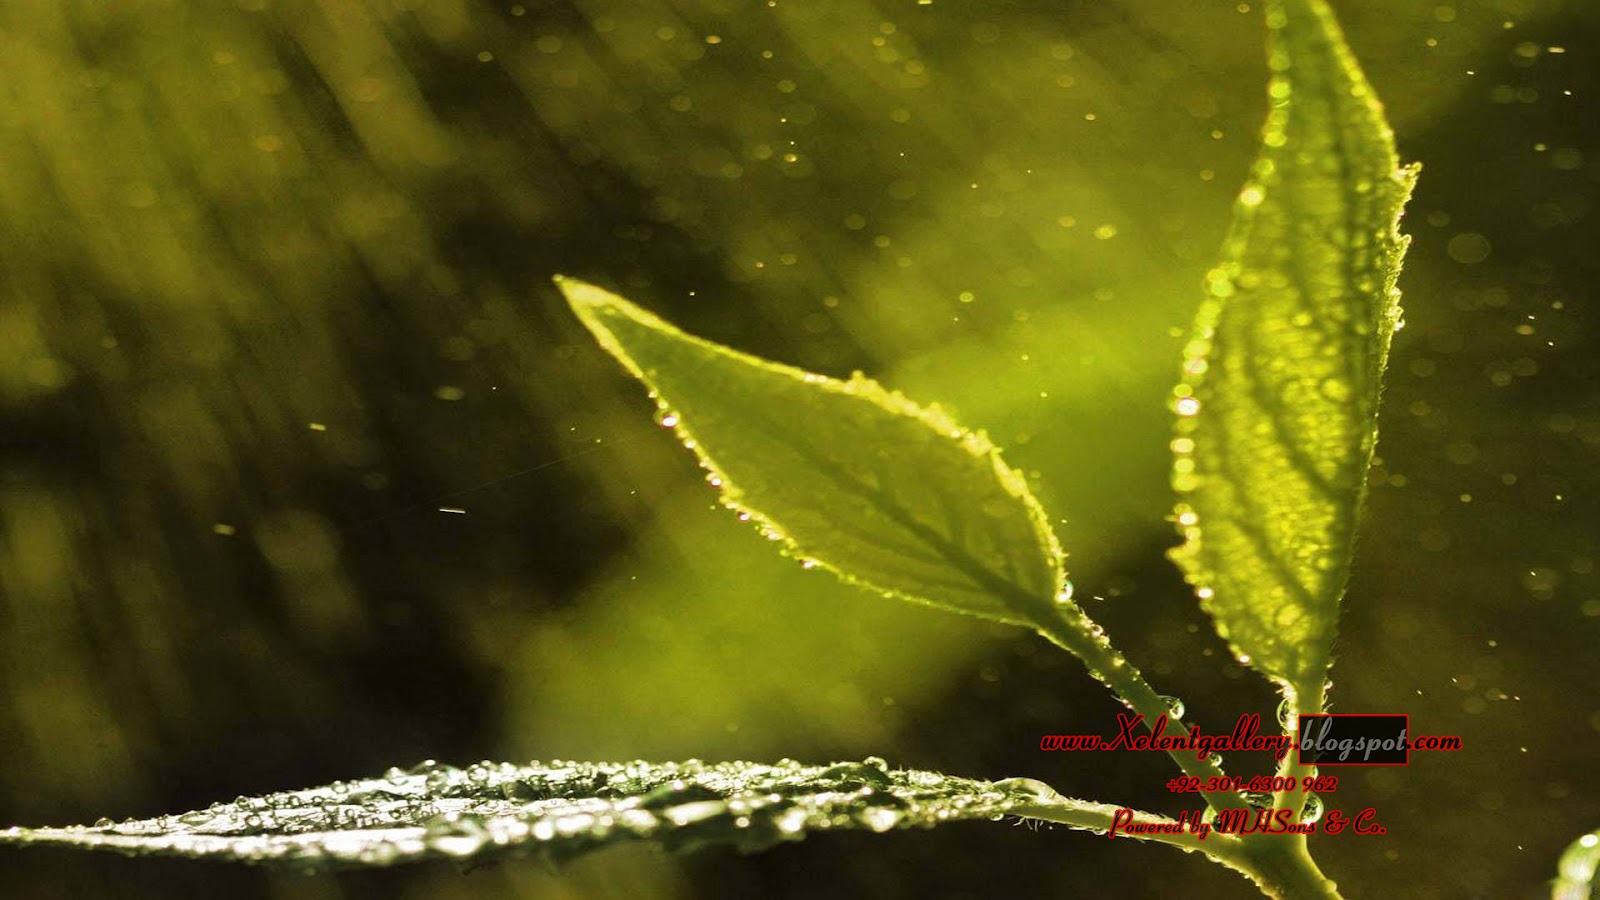 saison des pluies fond d'écran hd,l'eau,la nature,vert,feuille,macro photographie